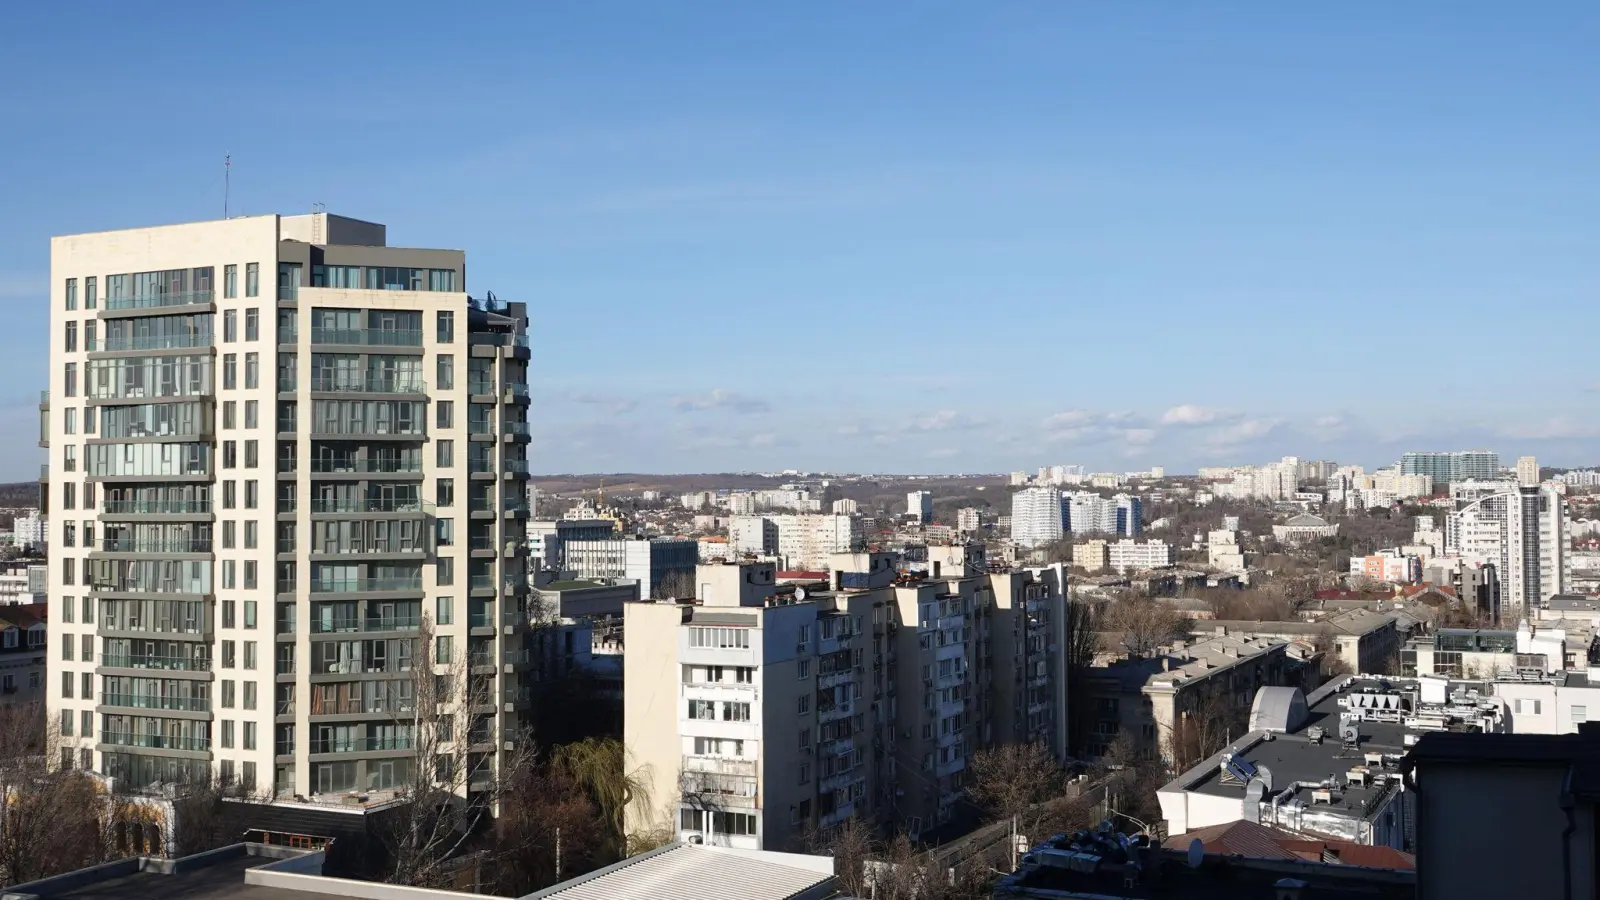 Blick auf das Zentrum von Moldaus Hauptstadt Chisinau. (Foto: Ulf Mauder/dpa)